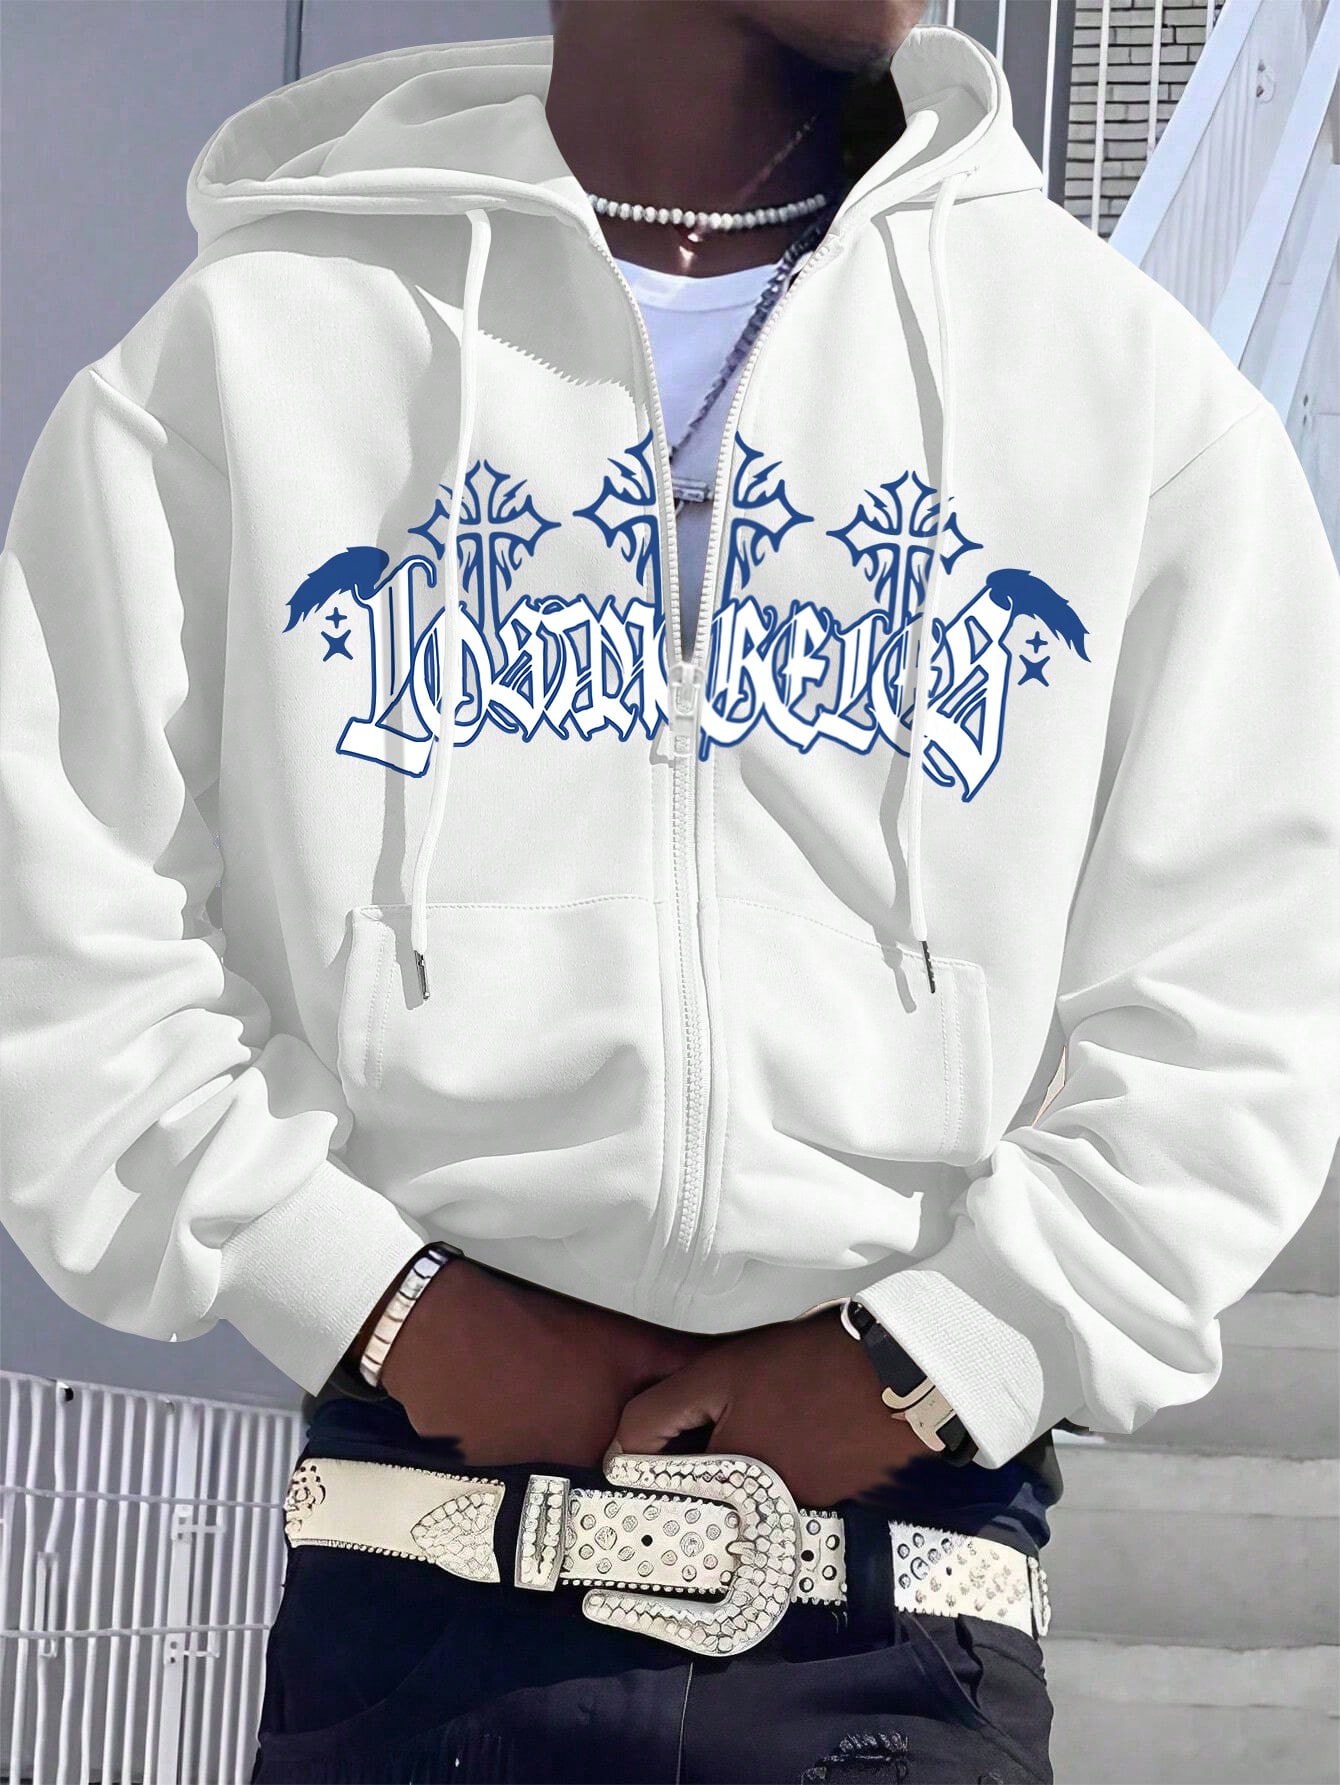 Мужская толстовка с капюшоном и застежкой-молнией спереди Manfinity EMRG с буквенным принтом, белый